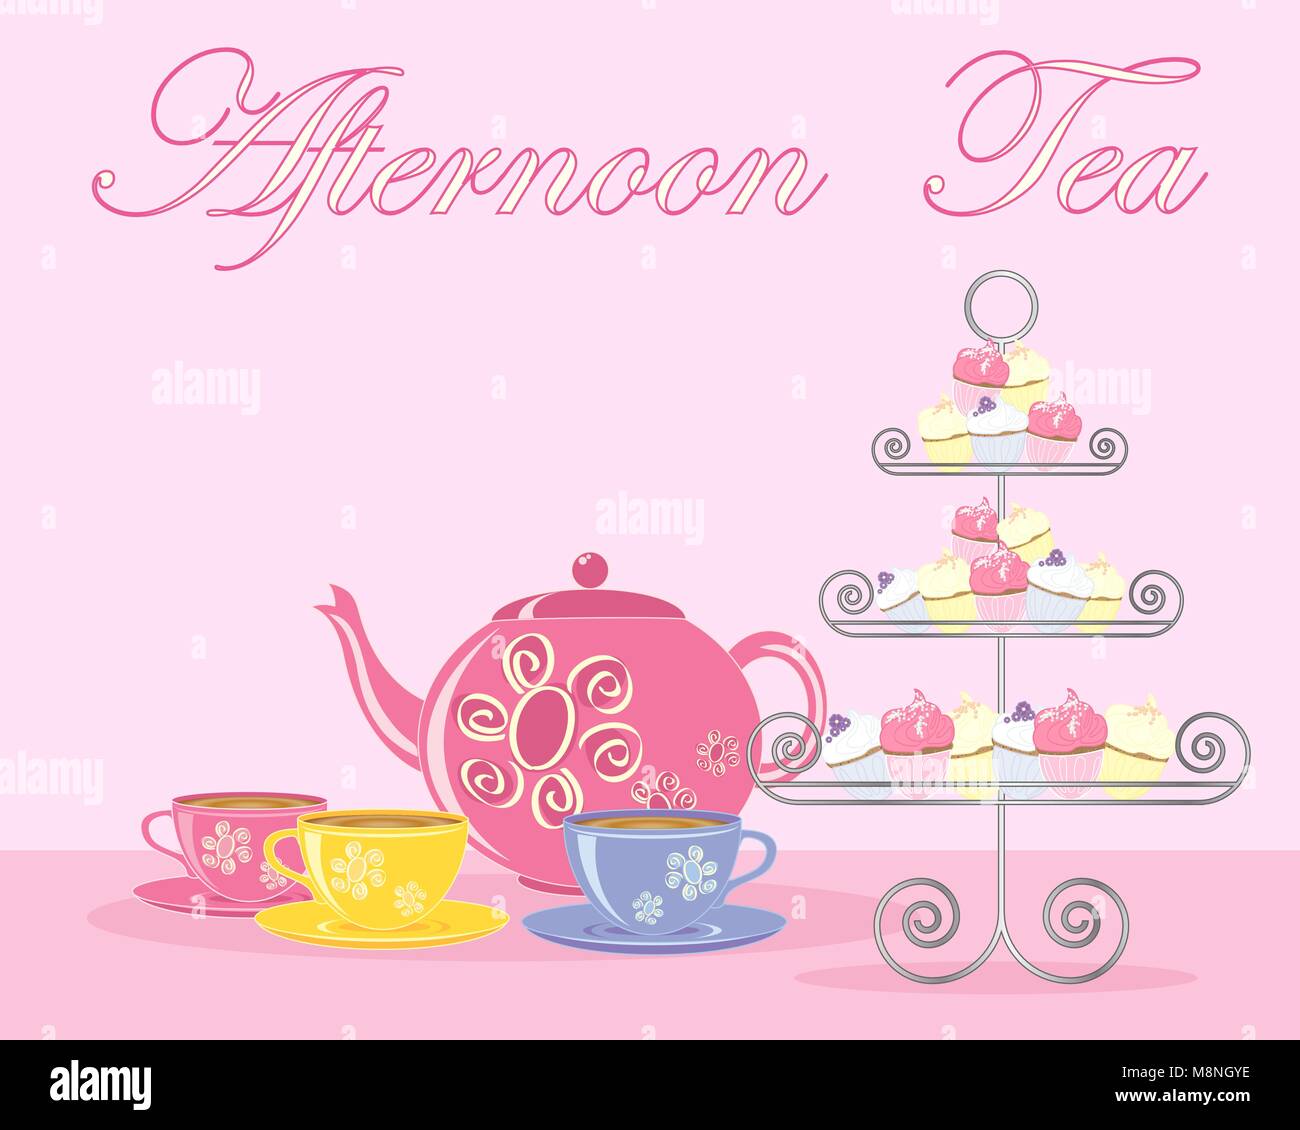 Un vecteur illustration en eps 10 format d'un thé anglais traditionnel l'après-midi à l'annonce format avec théière et tasse fancy cake stand Illustration de Vecteur